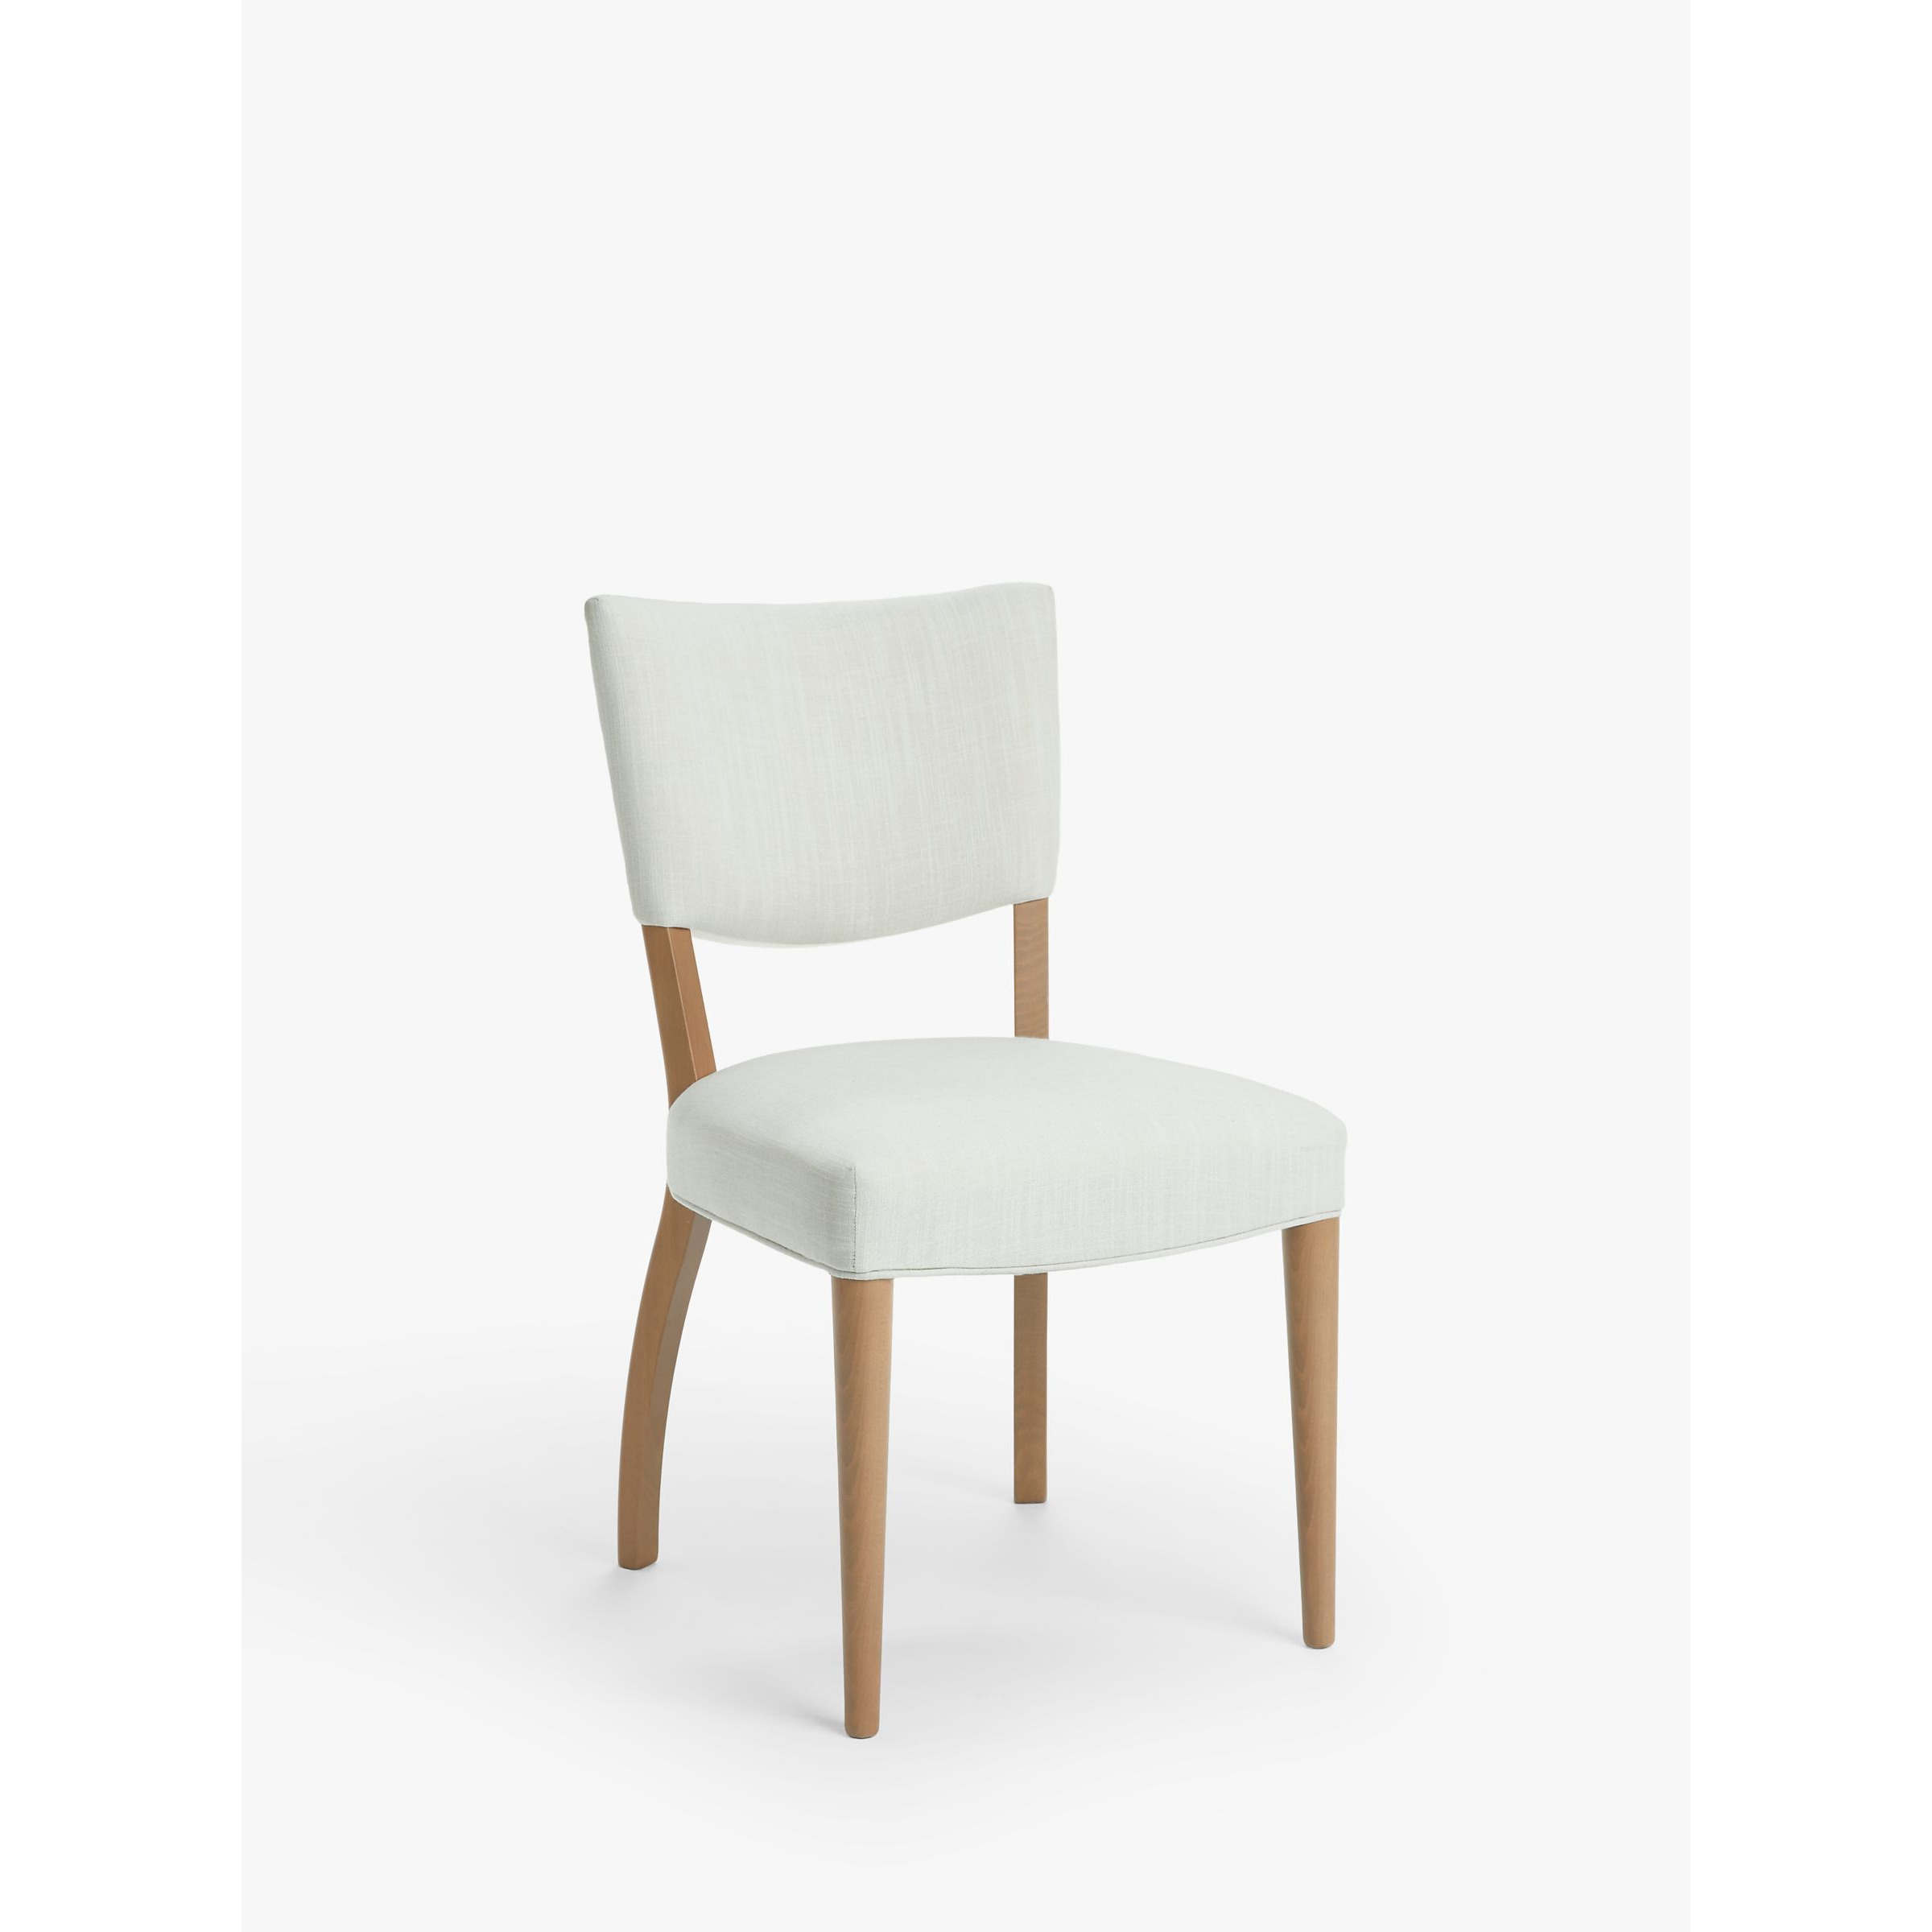 John Lewis Parisian Relaxed Linen Dining Chair, FSC-Certified (Beech Wood) - image 1